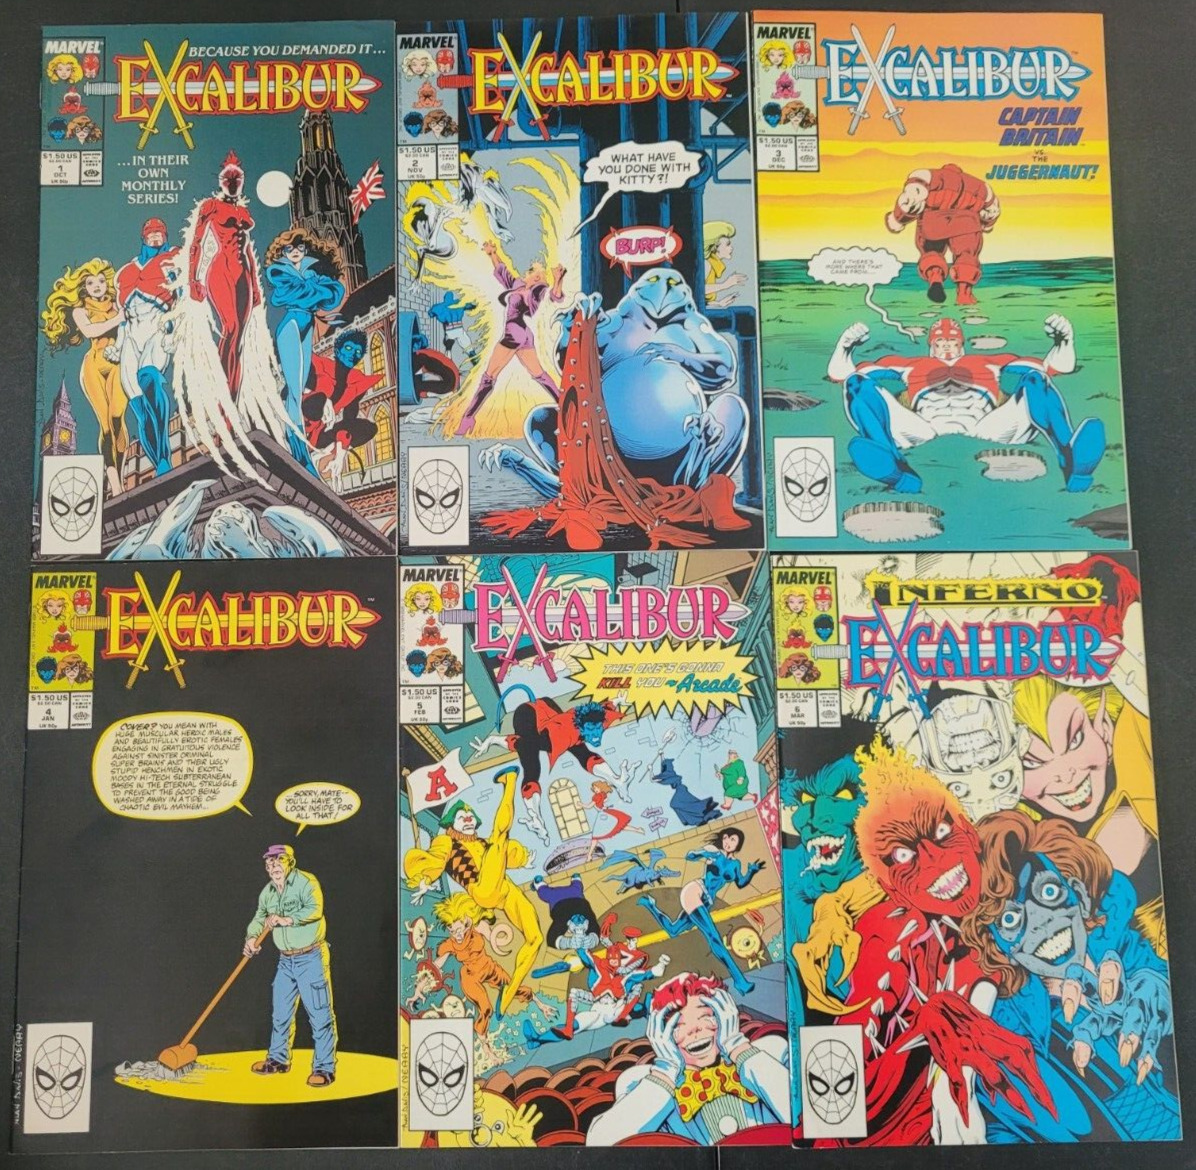 EXCALIBUR #1-18 (1988) MARVEL COMICS FULL RUN BONUS SPECIALS SET OF 26 ISSUES